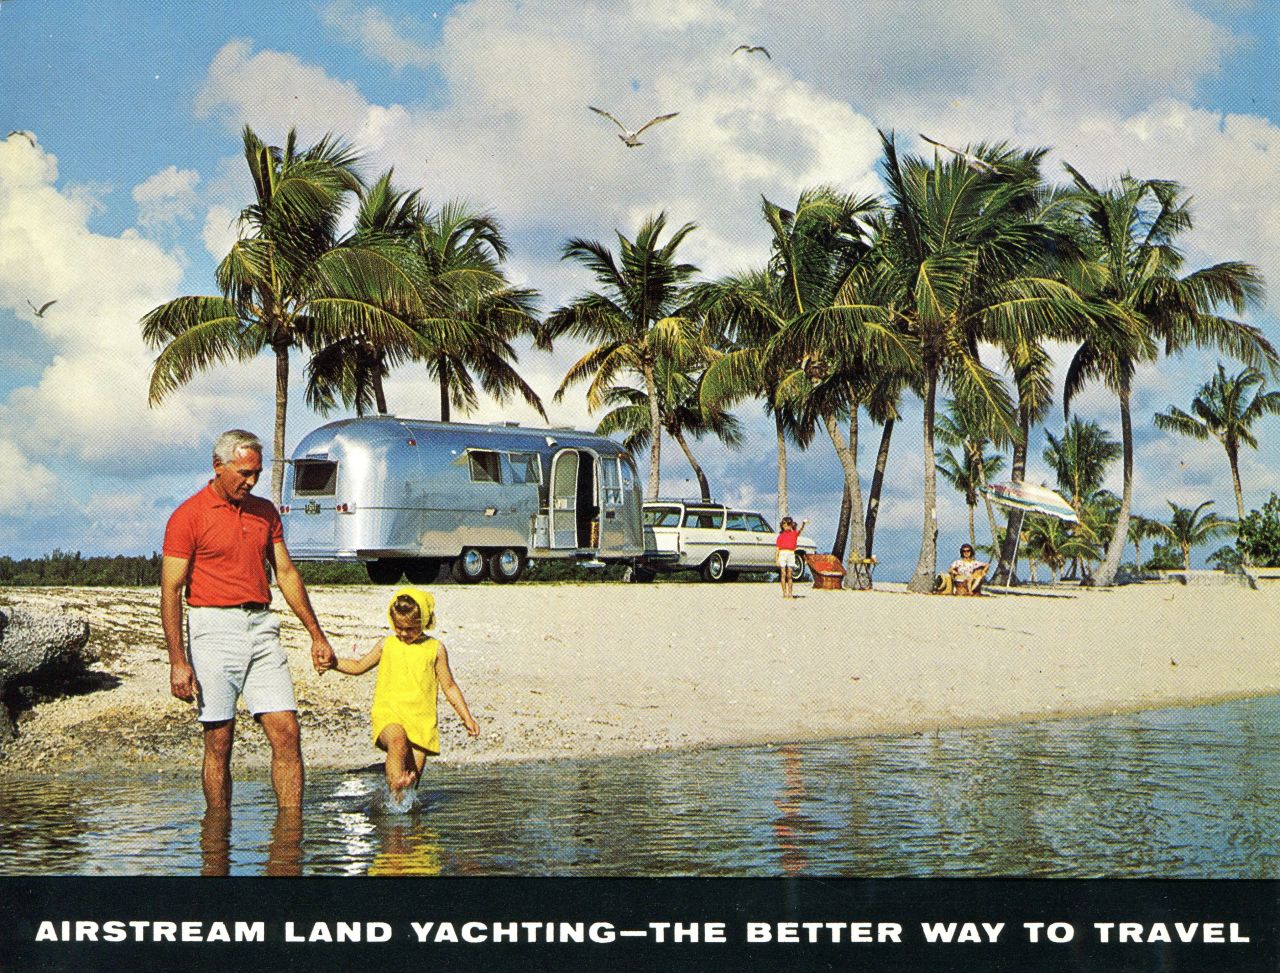 En la mente de muchos, la vida móvil siempre estará asociada con un diseño clásico: el remolque Airstream, cuyo aspecto icónico apenas ha cambiado en más de 85 años. 